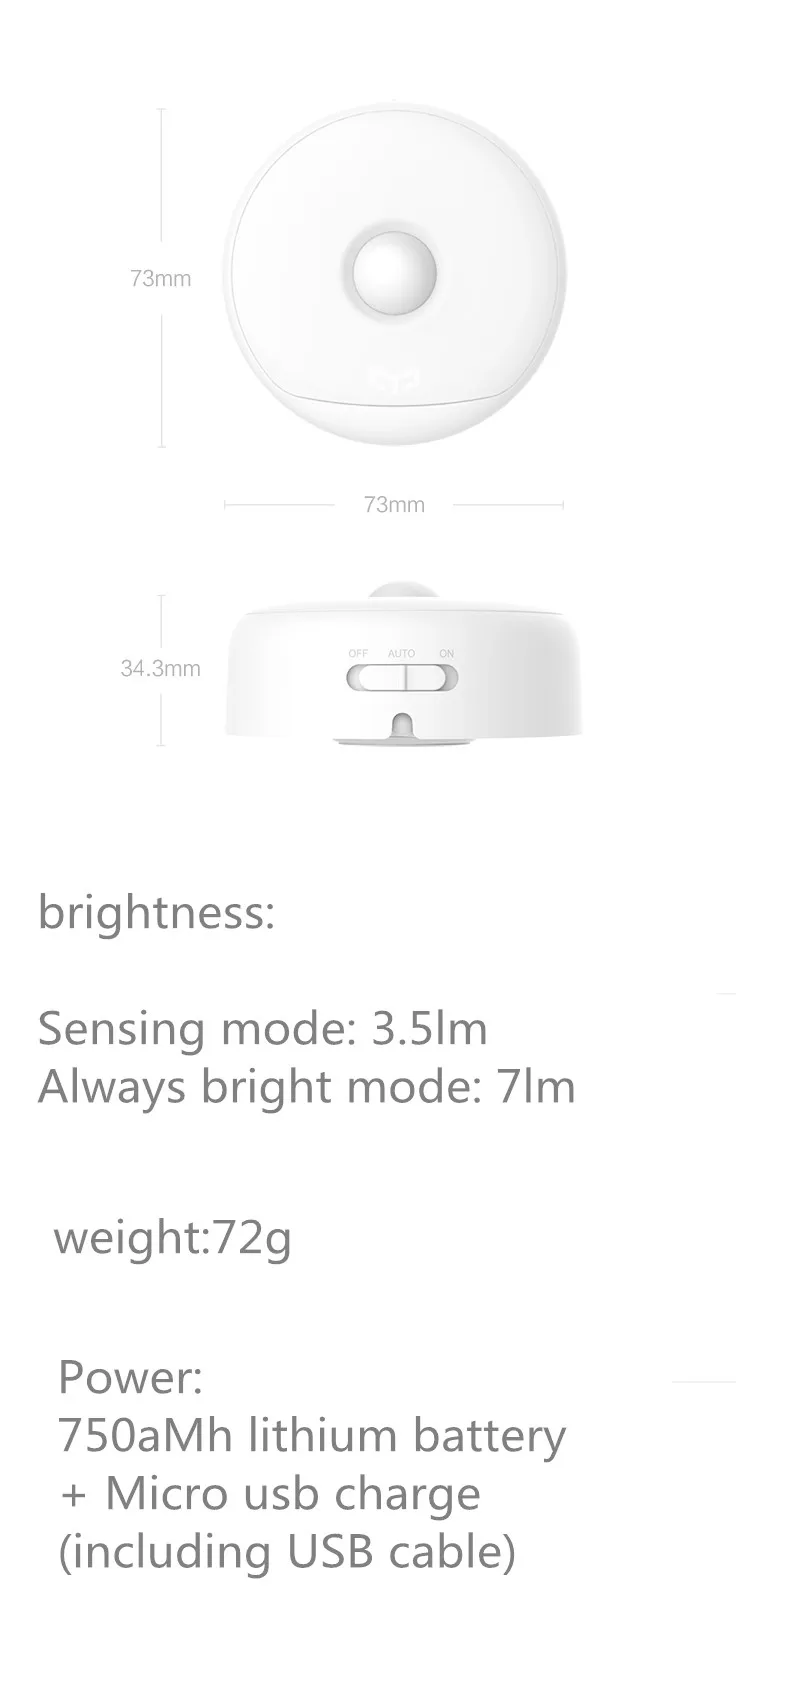 Xiaomi mi jia yeelight Ночной свет, usb-зарядка, крючки, станок и версия, используйте 120 на одном заряде, хуманьбоды датчик xiaomi mi Смарт домашняя одежда